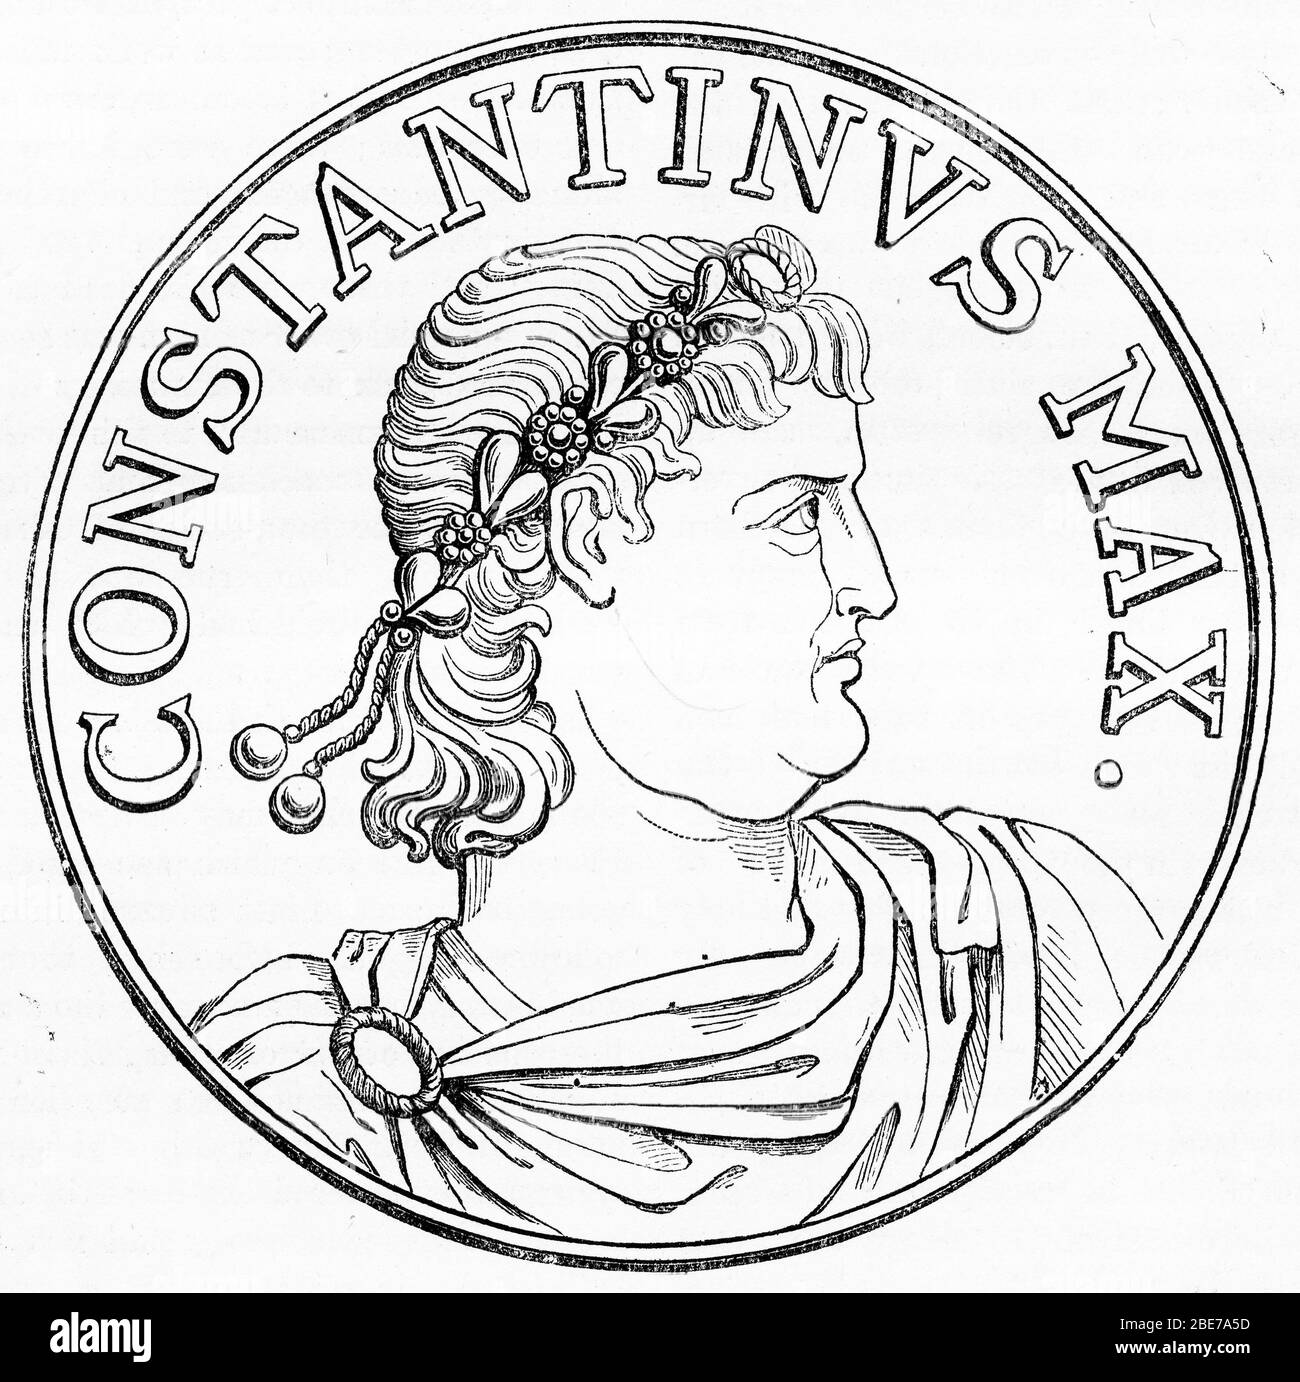 Ritratto inciso di Costantino il Grande (272 - 337), conosciuto anche come Costantino i, un imperatore romano che governò tra il 306 e il 337 d.C. Foto Stock